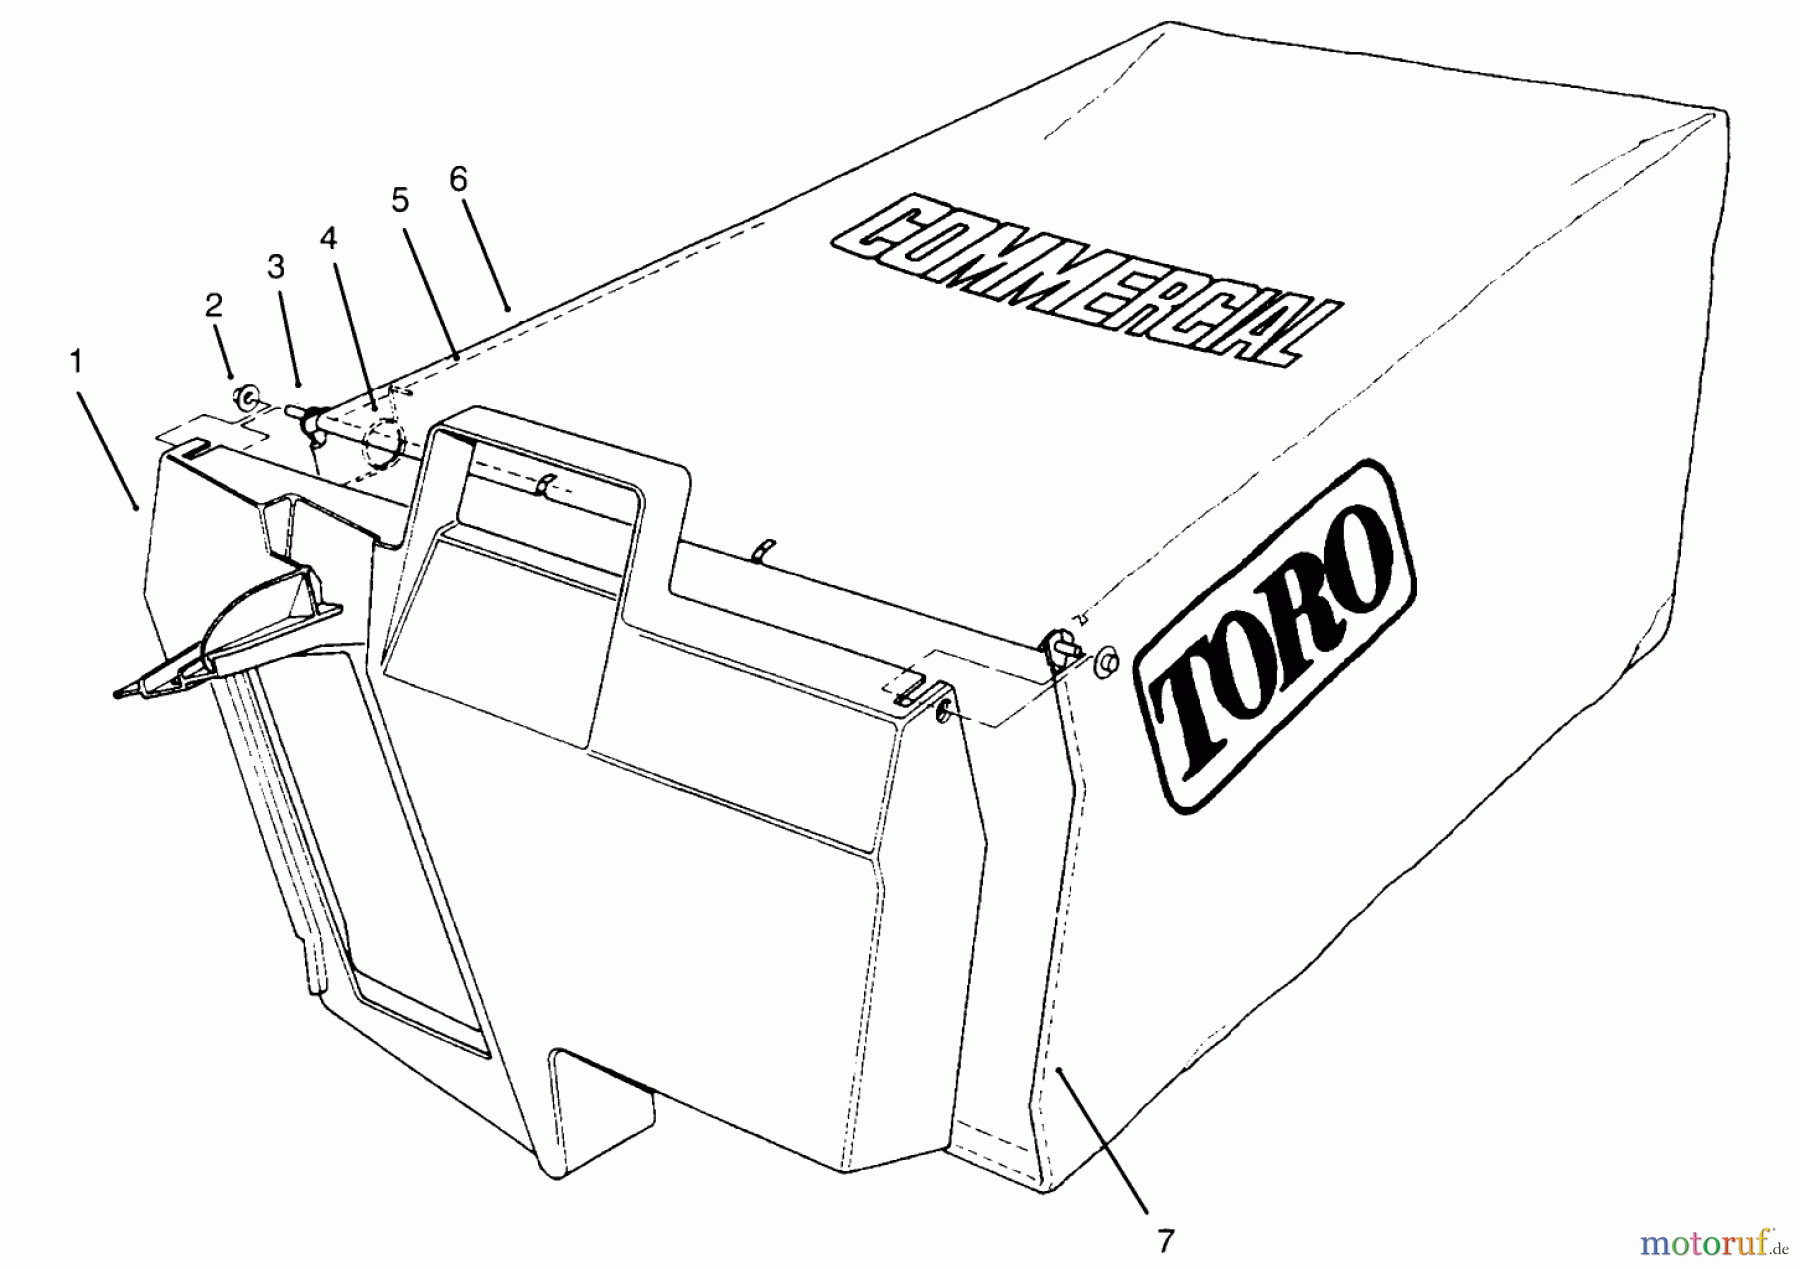  Toro Neu Mowers, Walk-Behind Seite 2 22044BC - Toro Lawnmower, 1995 (5900001-5999999) GRASS BAG ASSEMBLY NO. 11-5609